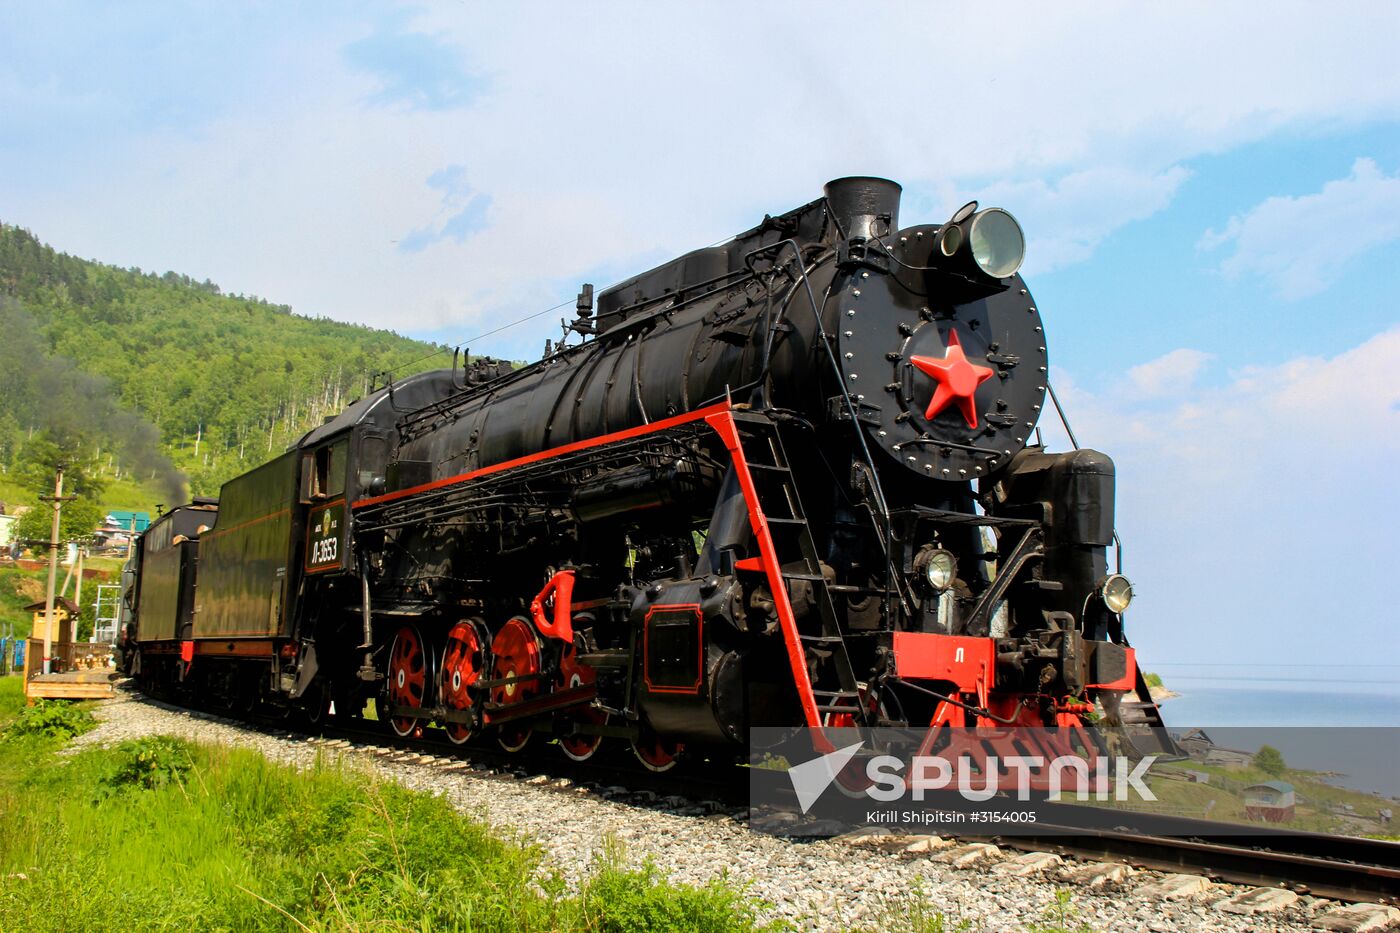 Circum-Baikal railway and Great Baikal Trail